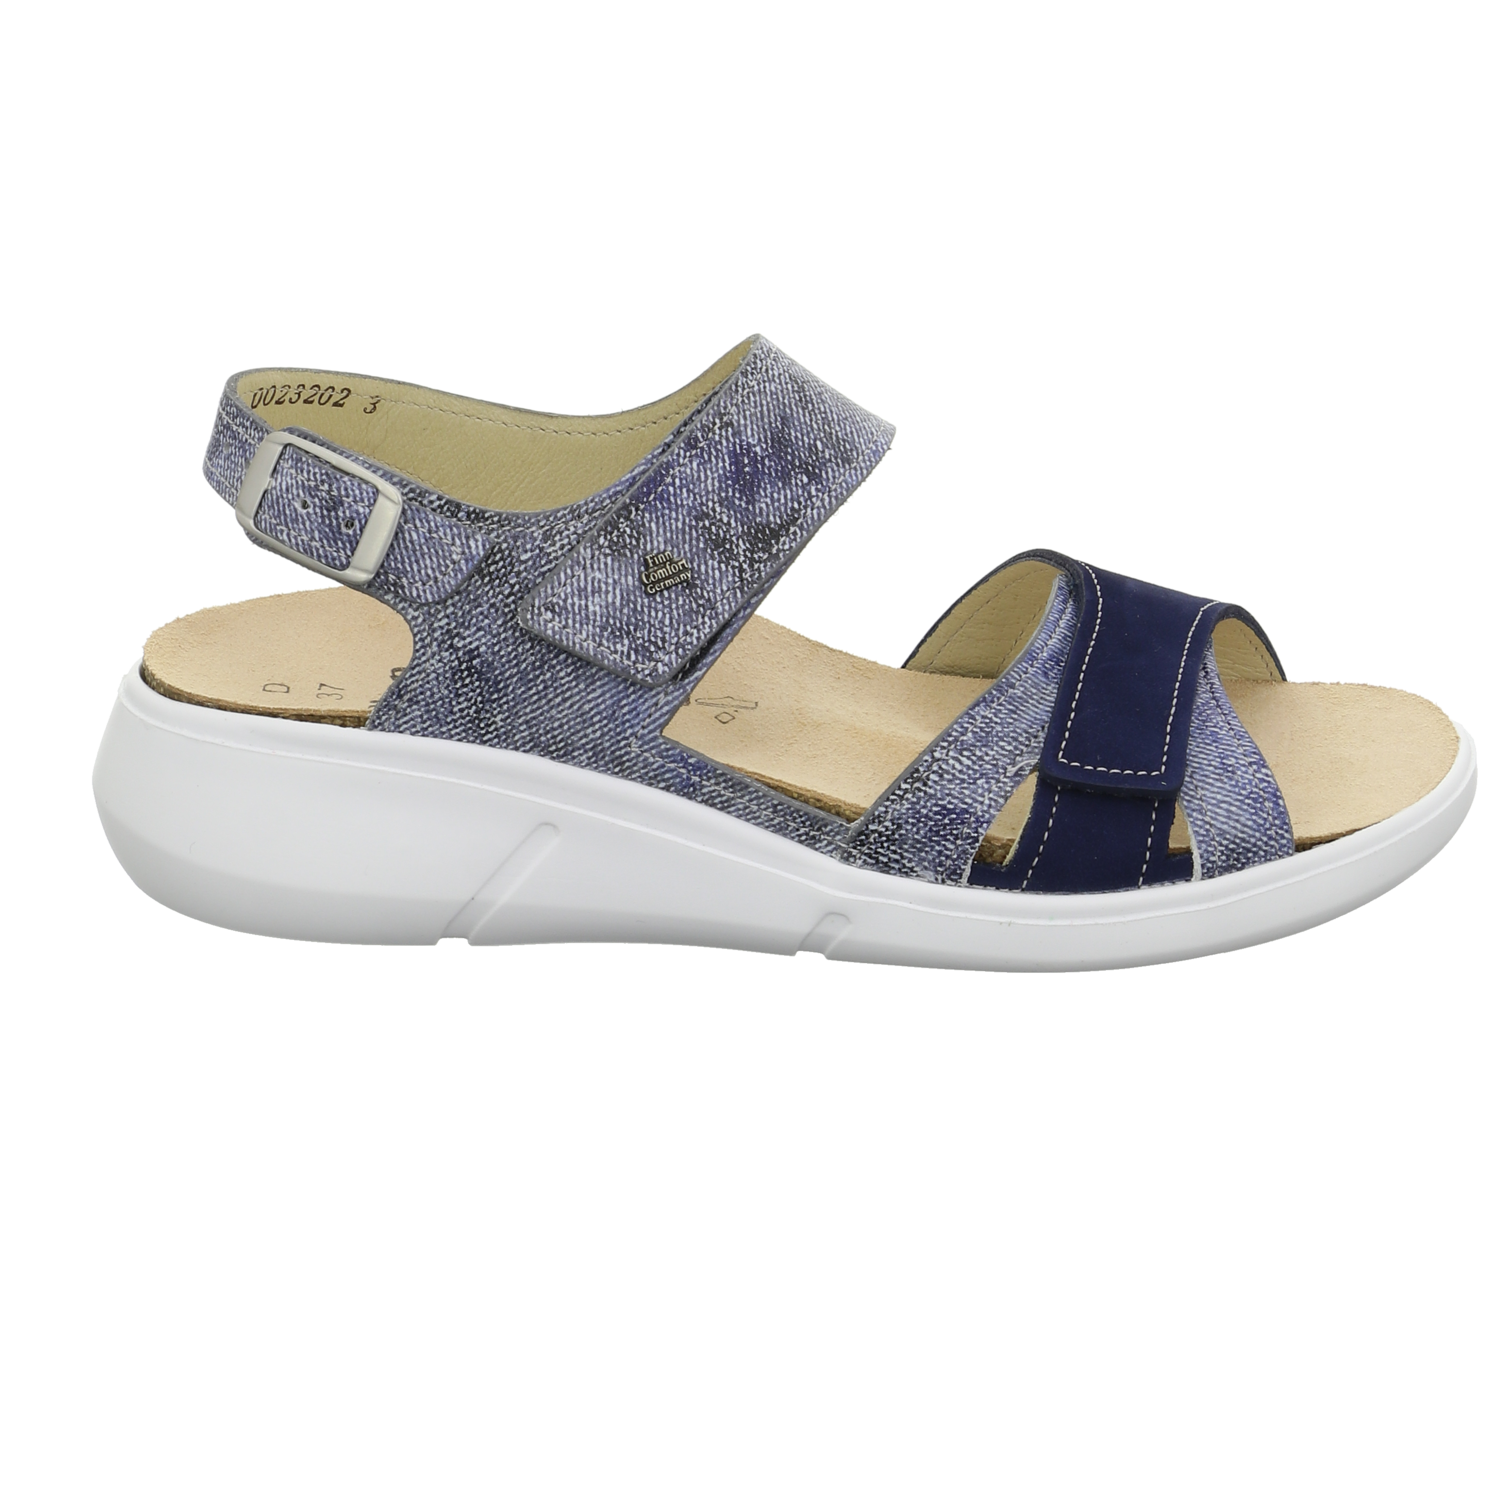 FinnComfort Comfort-Sandalette blau / dunkel-blau